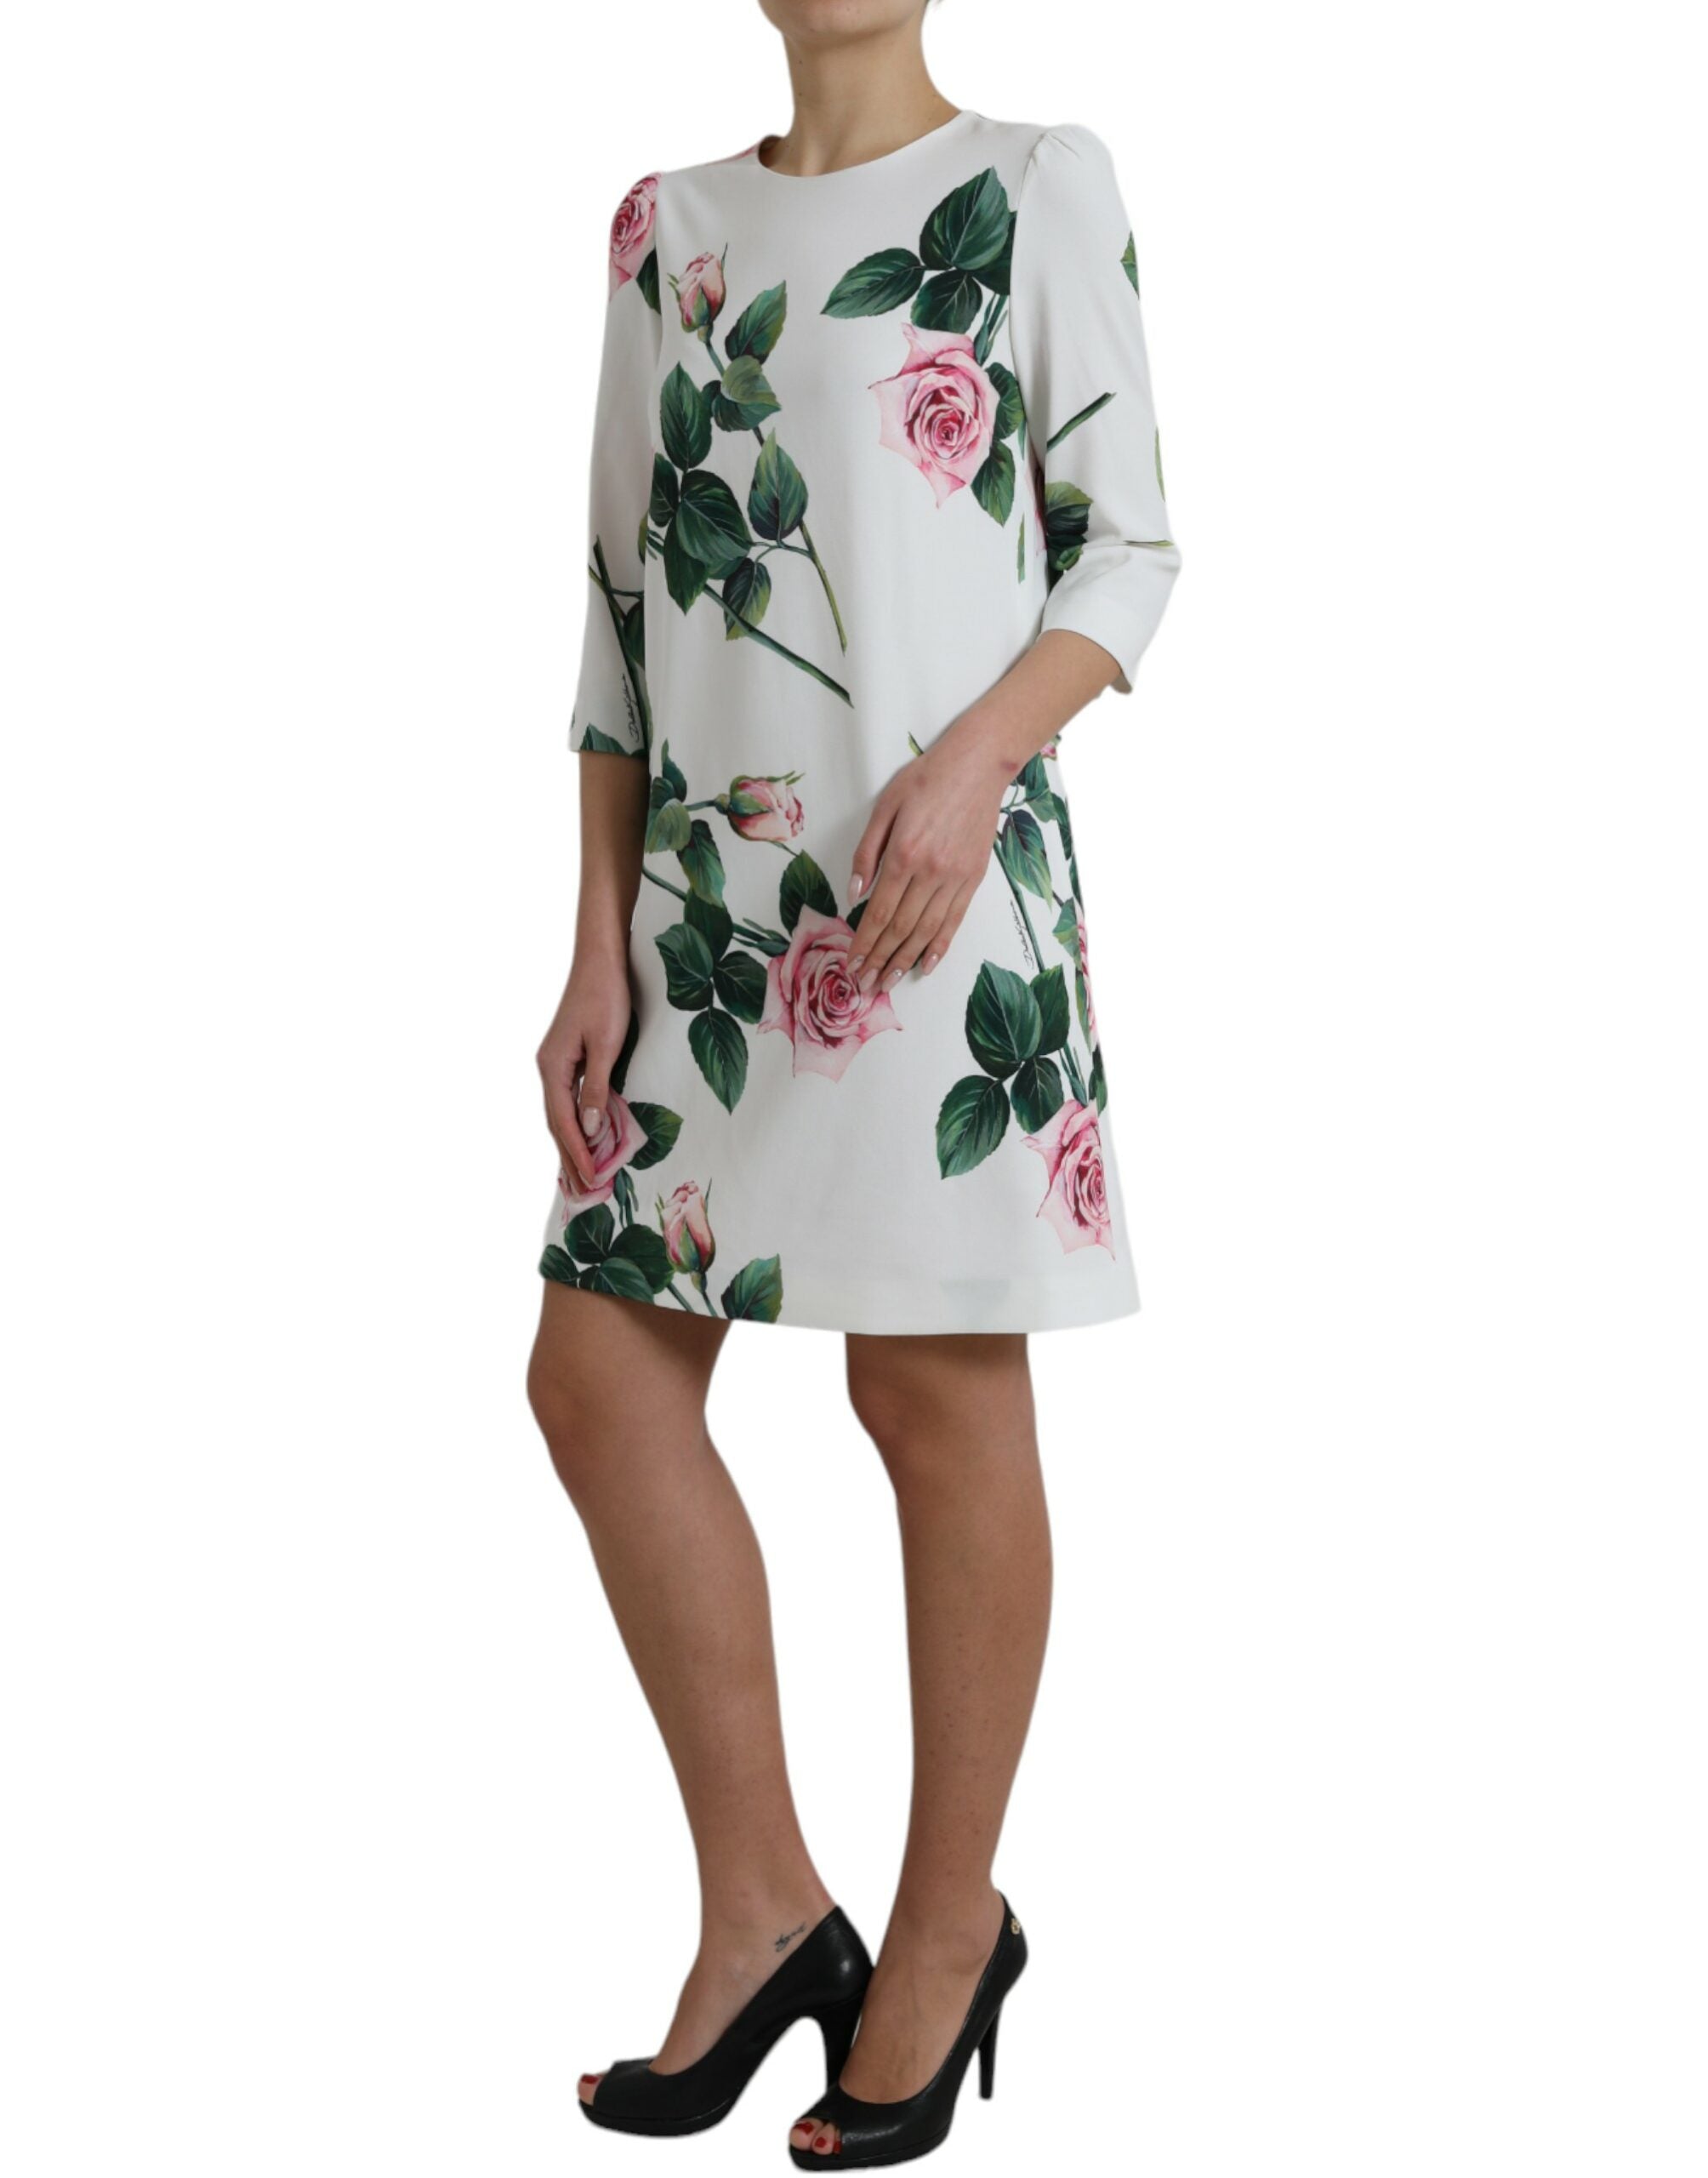 Elegant Floral A-Line Knee-Length Dress